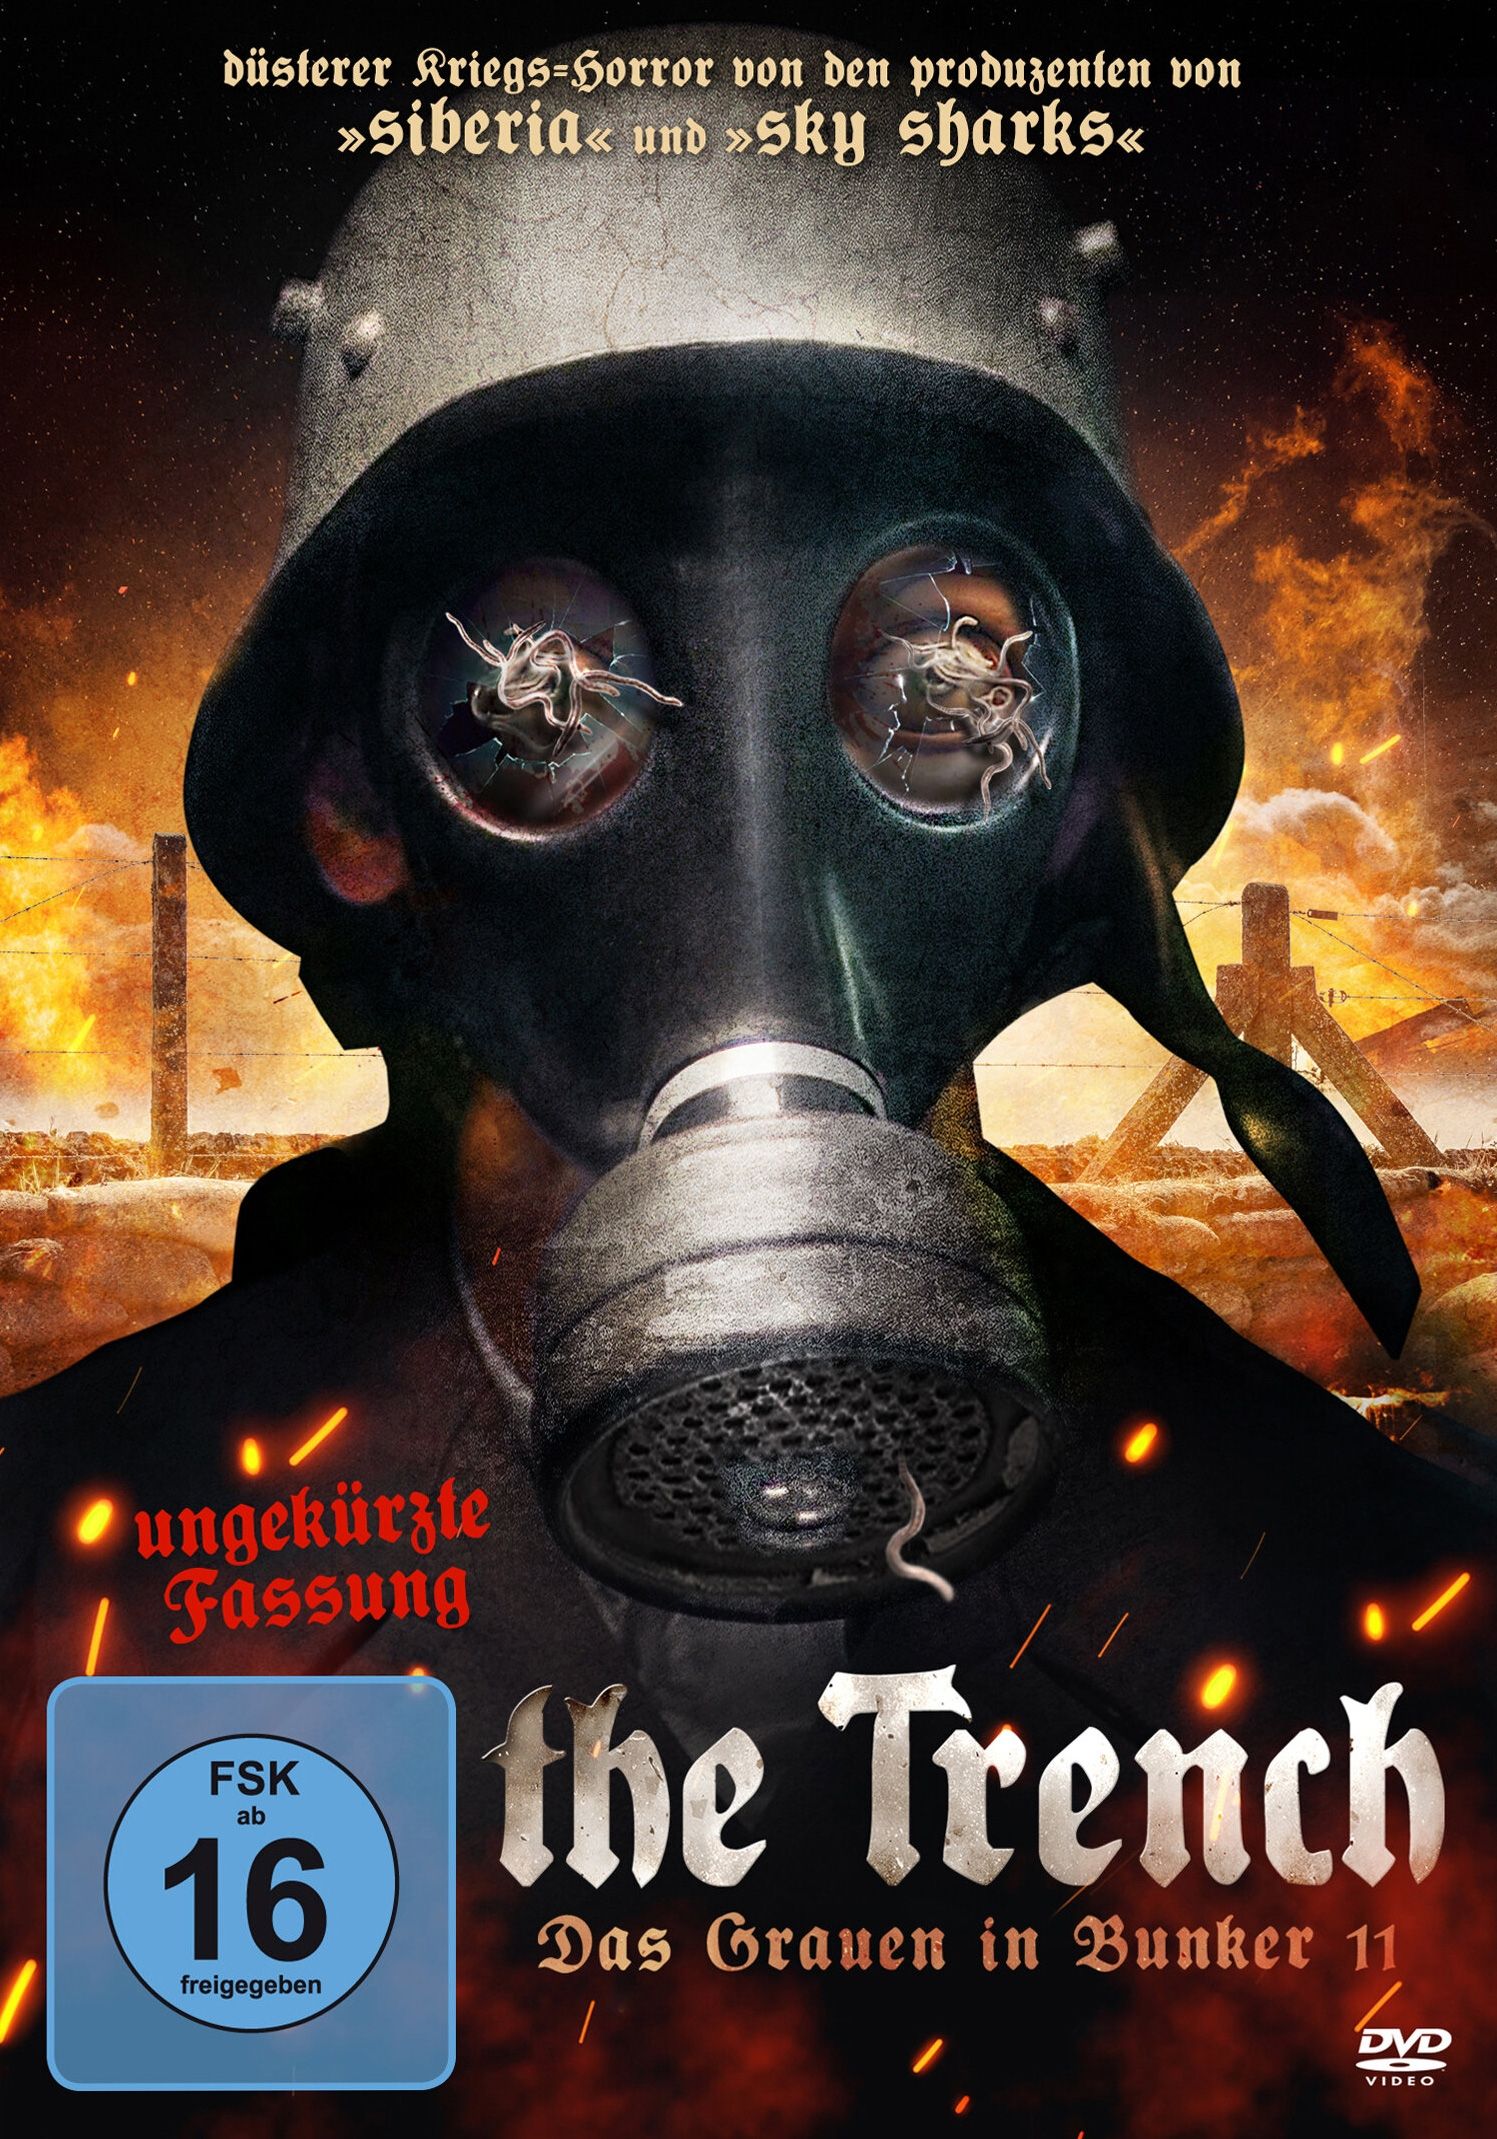 Trench, The - Das Grauen in Bunker 11